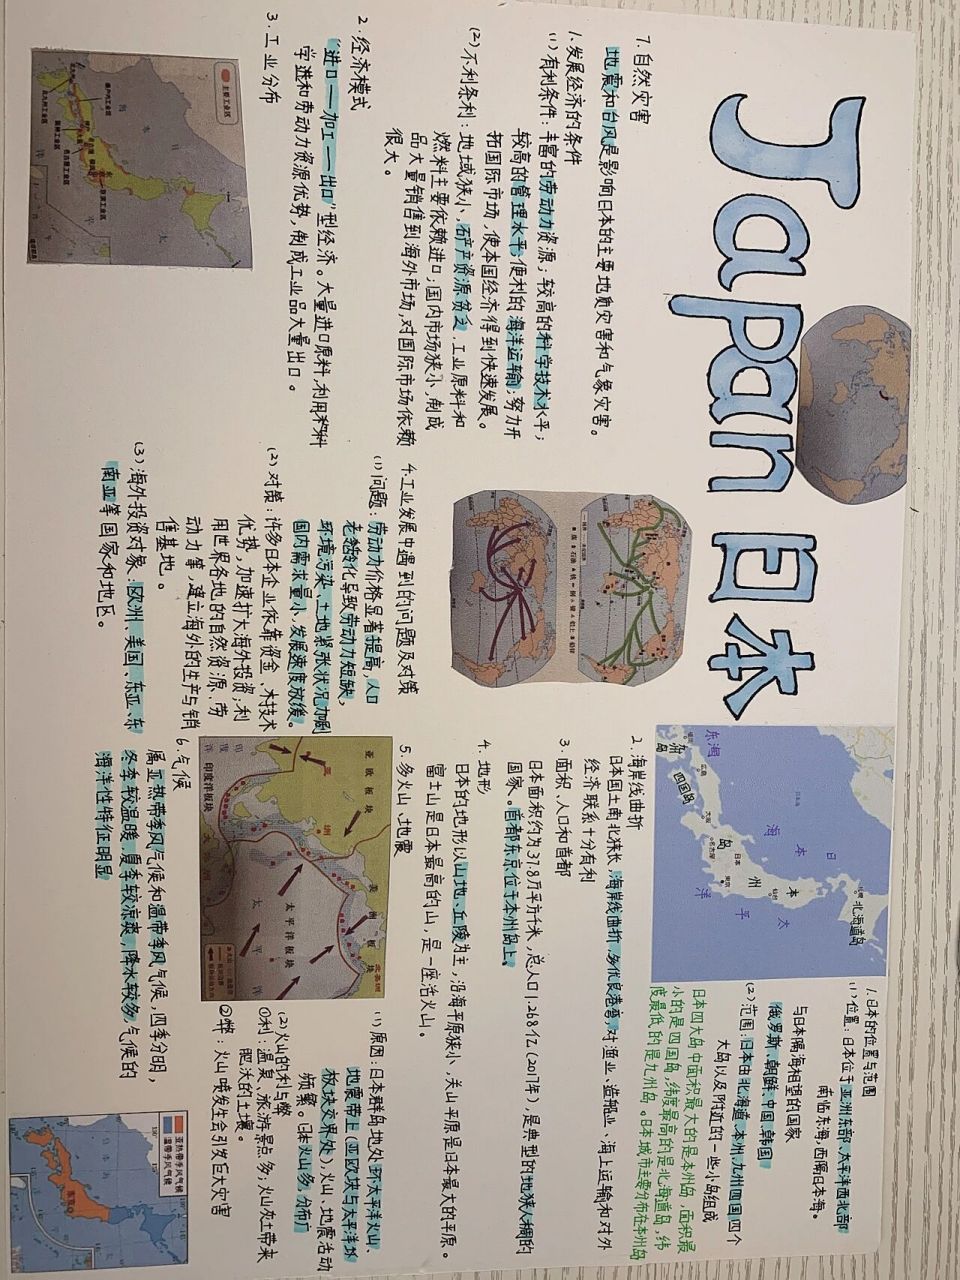 日本地理小报模板图片